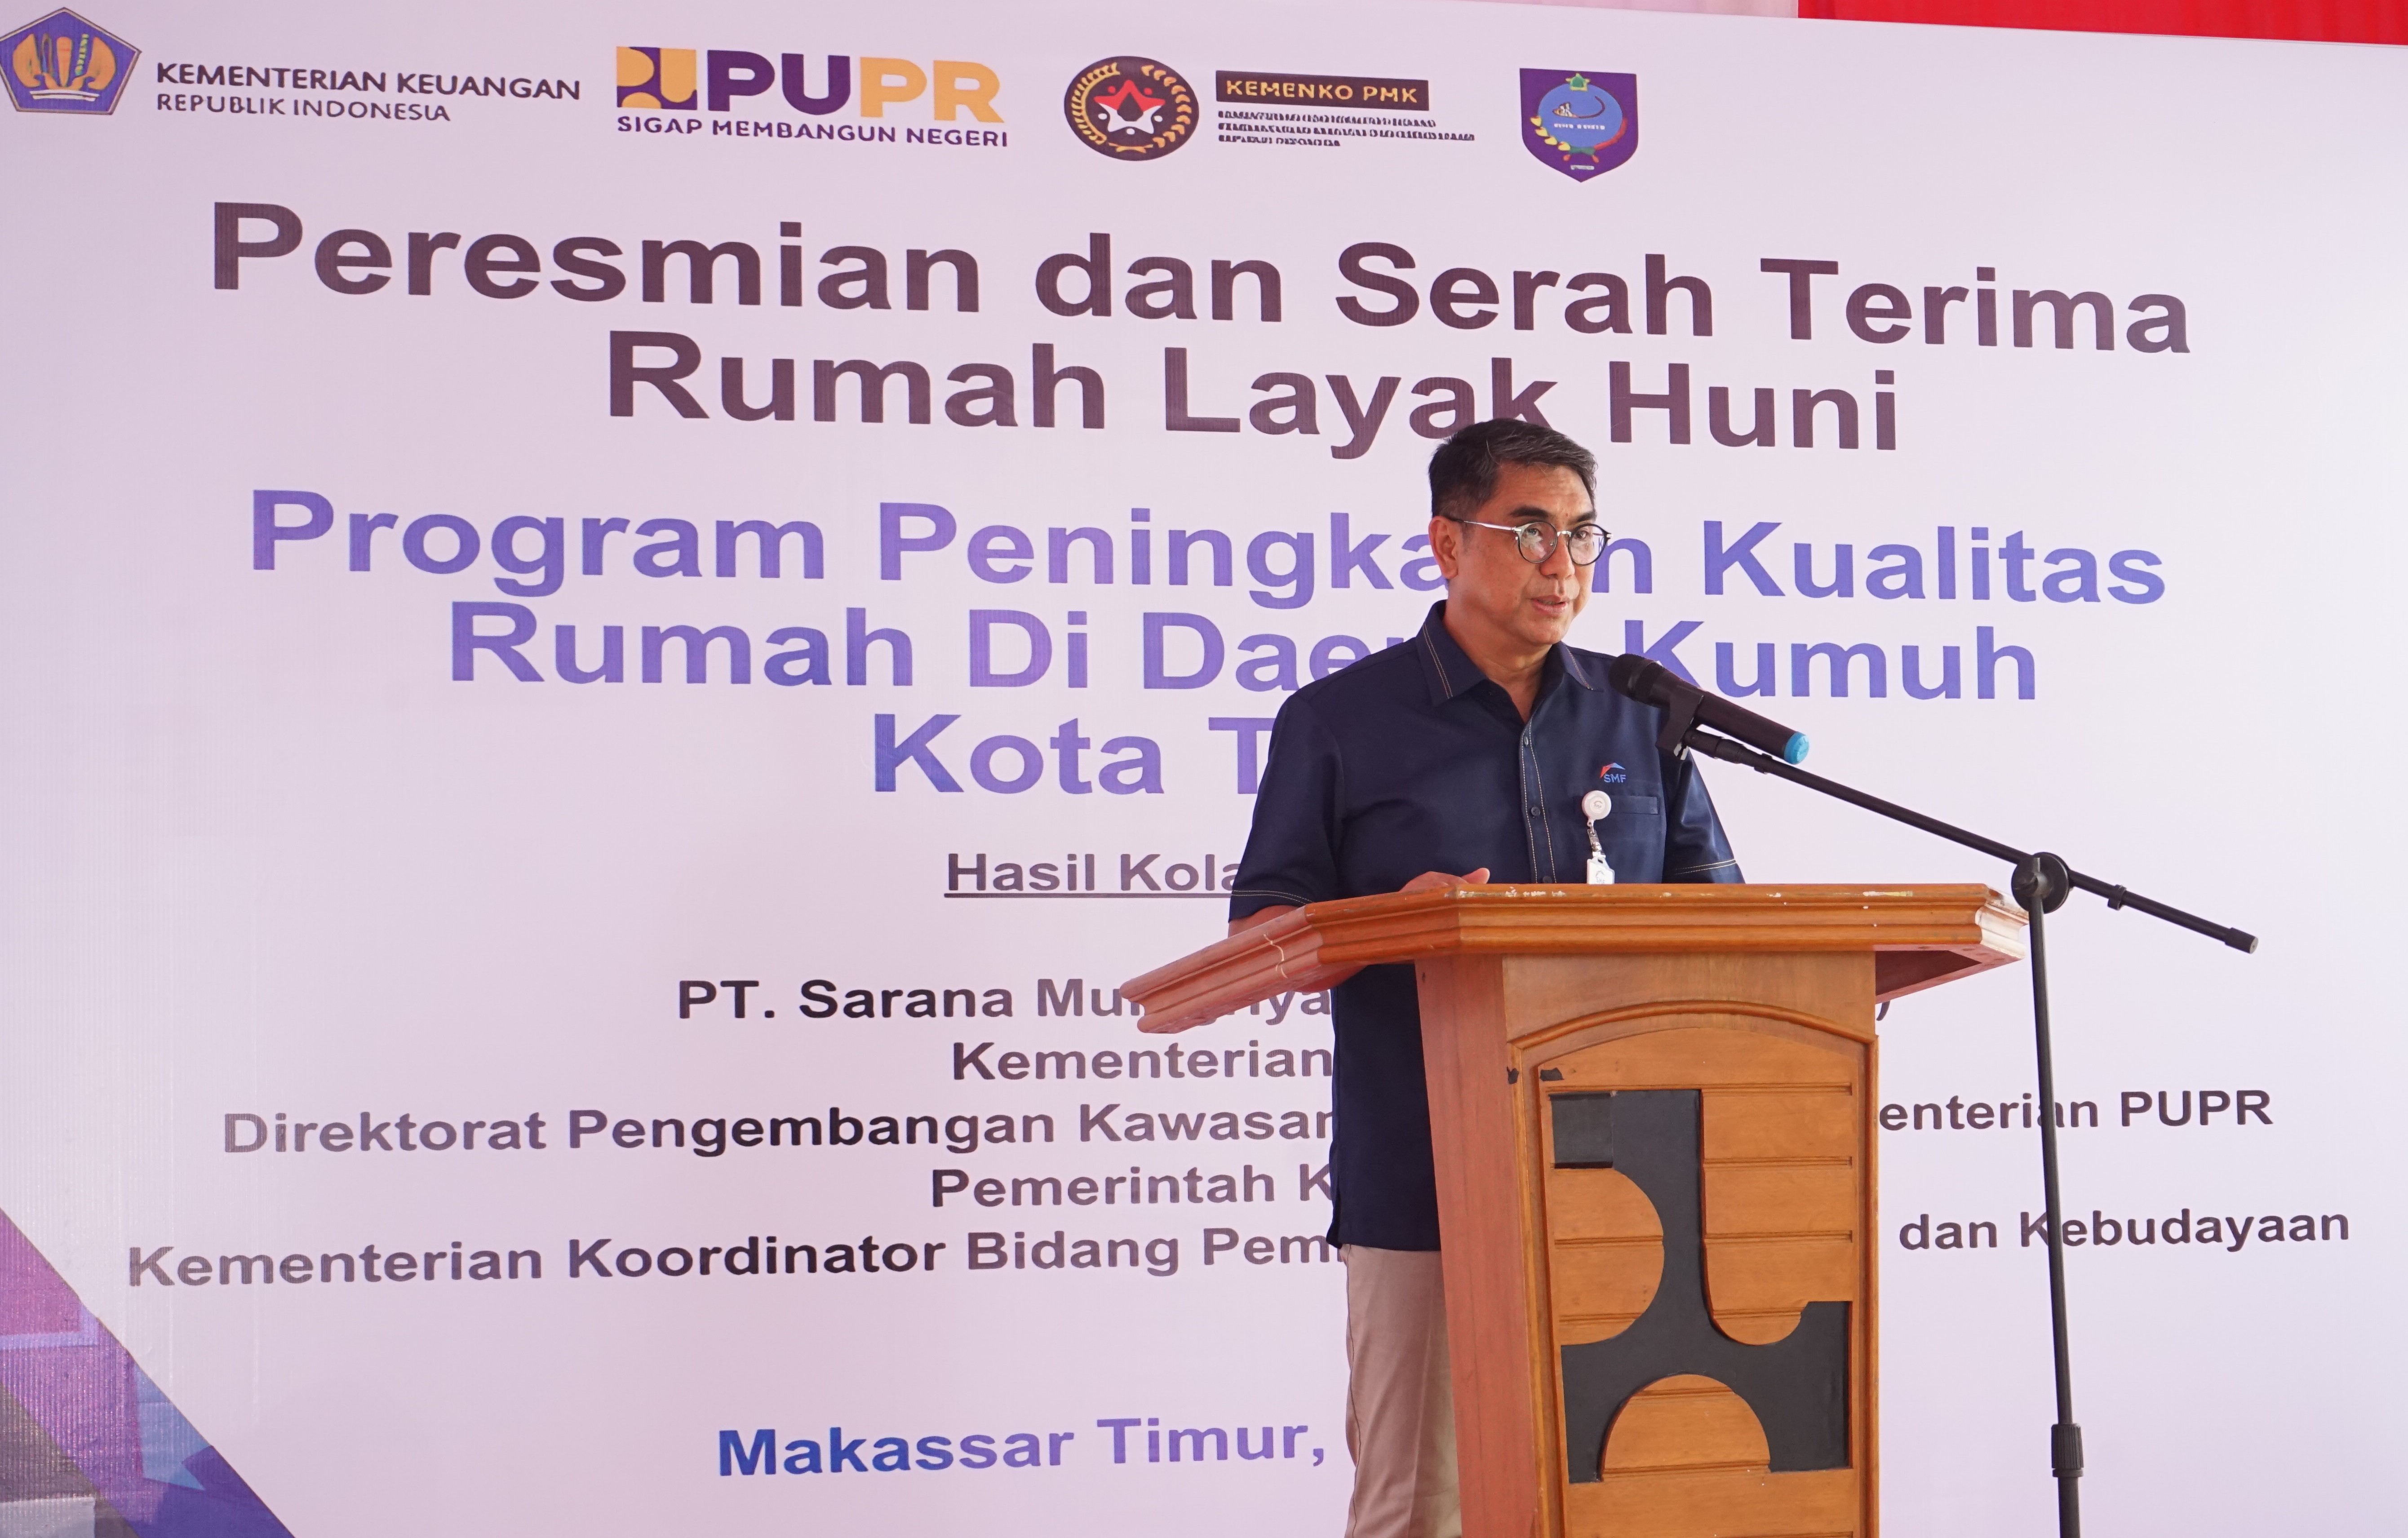 Peresmian dan Penyerahan Rumah Layak Huni dari CSR PT. Sarana Multigriya Finansial (Persero) di Ternate